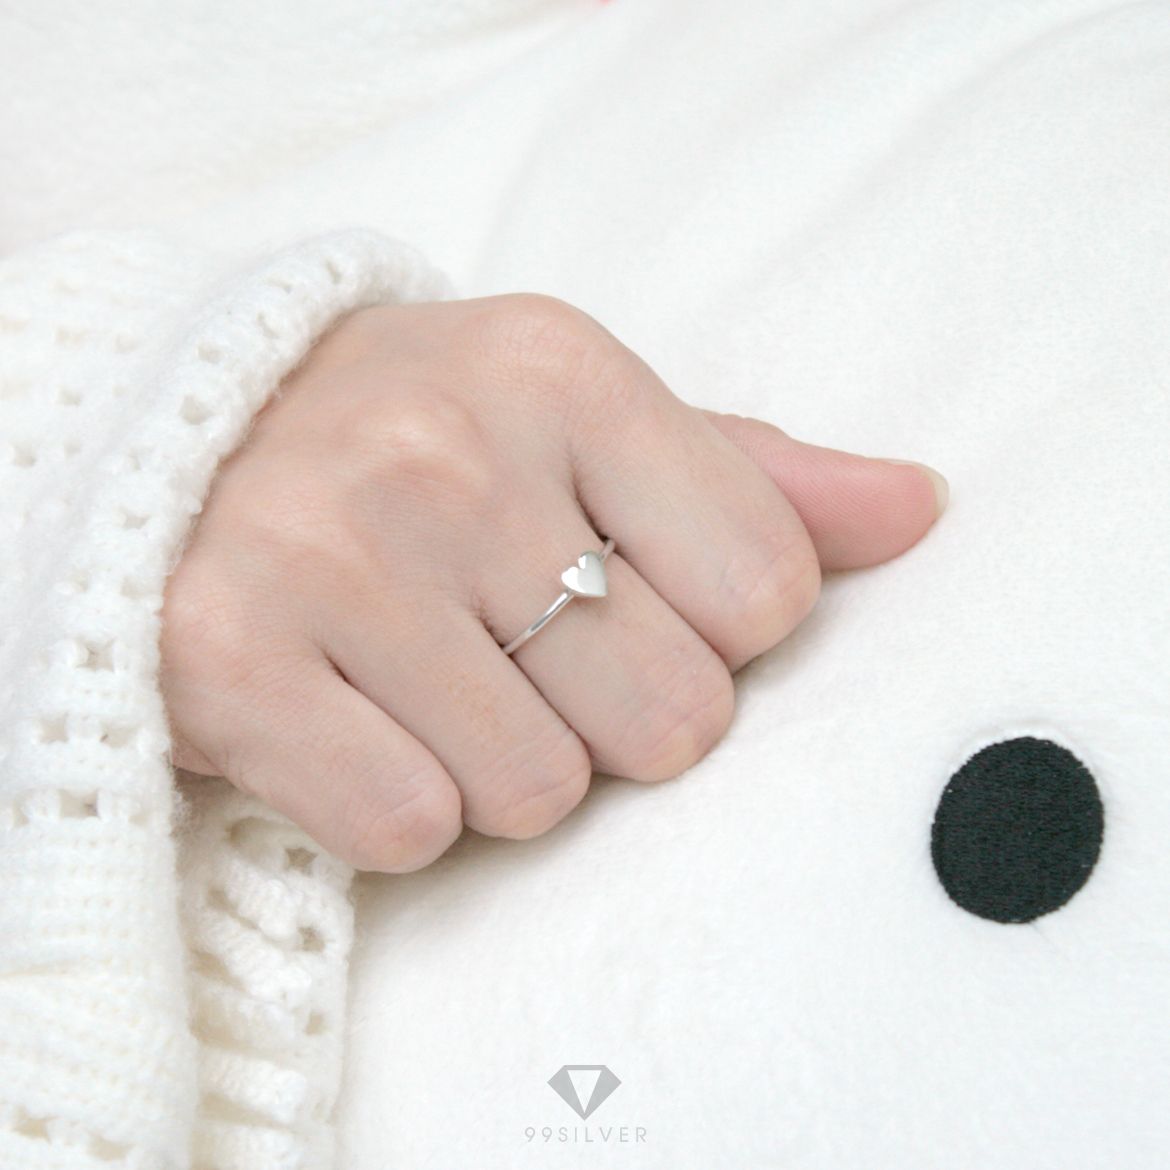 แหวนหัวใจ แบบเล็ก หน้าแหวนสามารถสลักอักษรได้ ก้านเล็กพอดีมือใส่สบาย